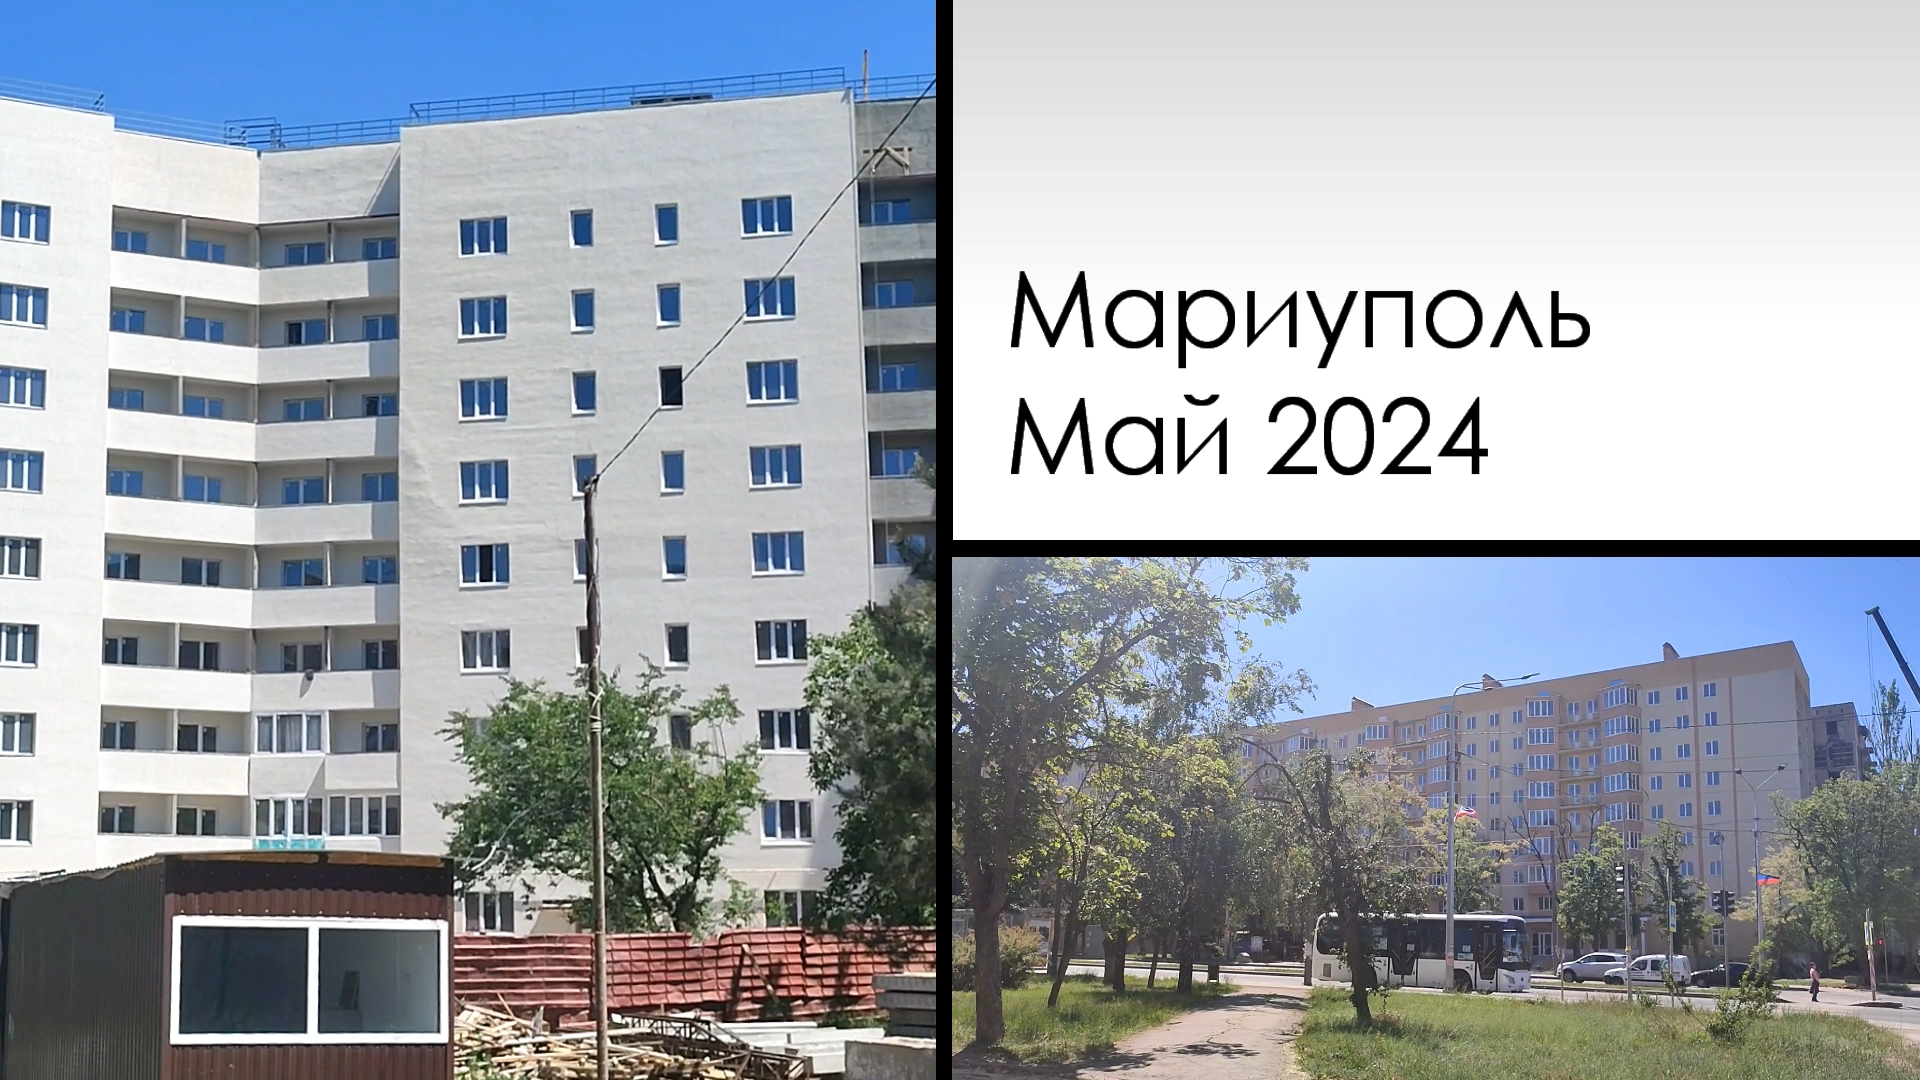 Мариуполь. Май 2024. Mariupol. May 2024. Зелинского, Бахчиванджи, Громовой.